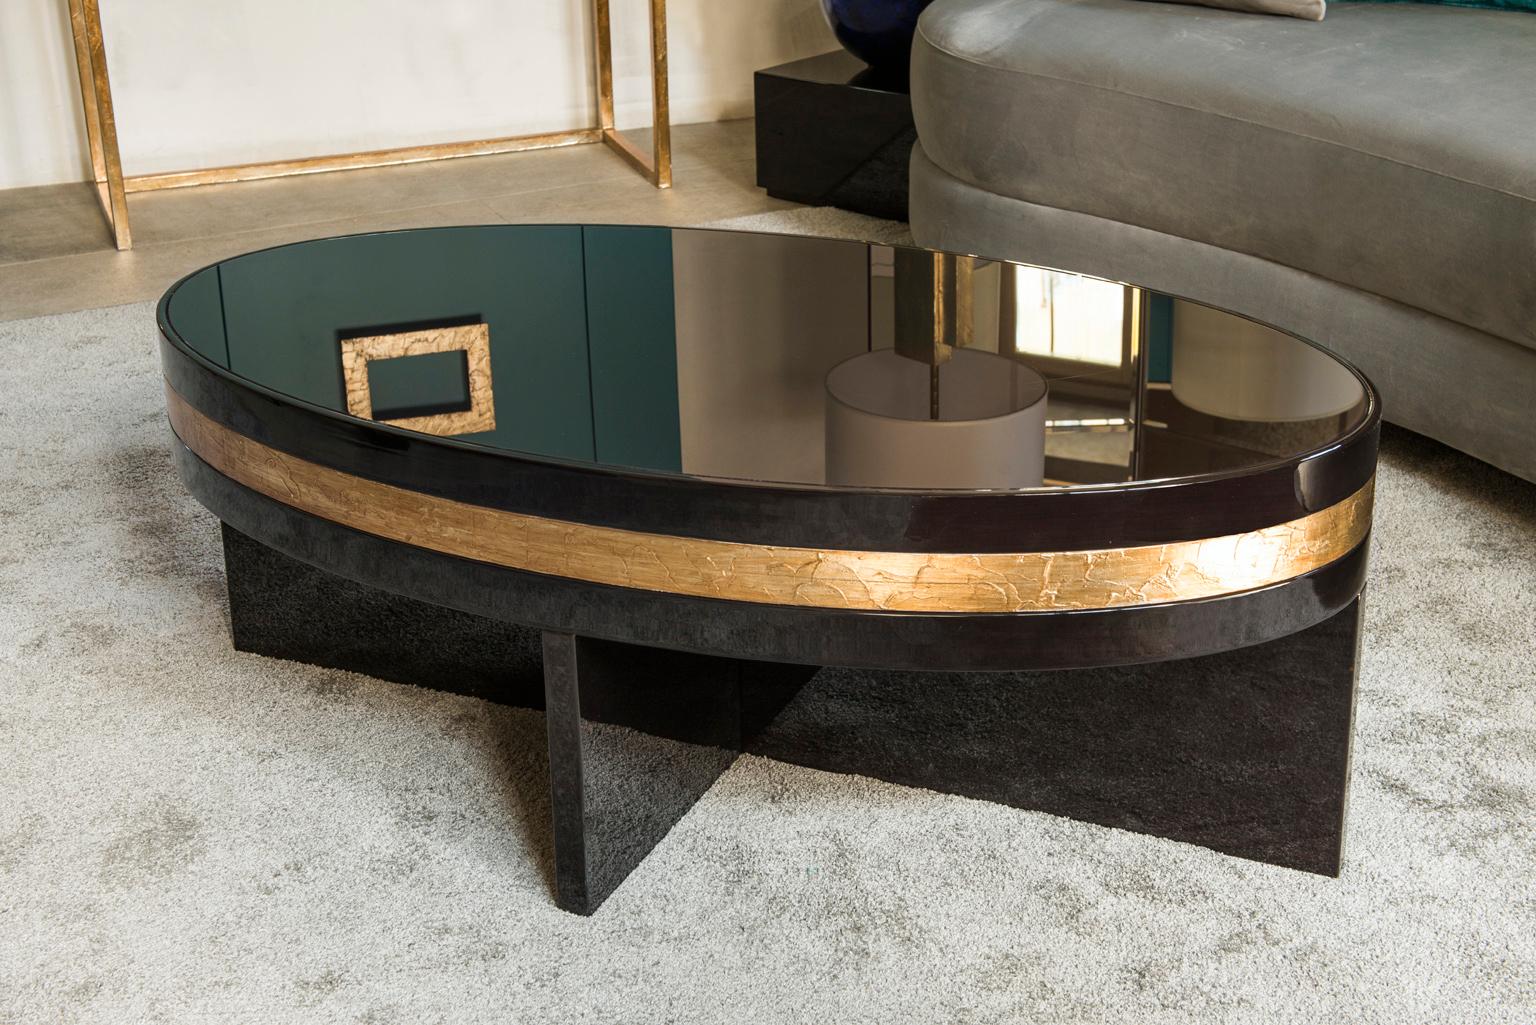 Conçue par IC et habilement fabriquée par des artisans italiens experts, la table basse Tullia présente un plateau ovale en verre posé sur une base en bois croisé. Il est enrichi d'une précieuse et élégante décoration de feuilles de bronze et